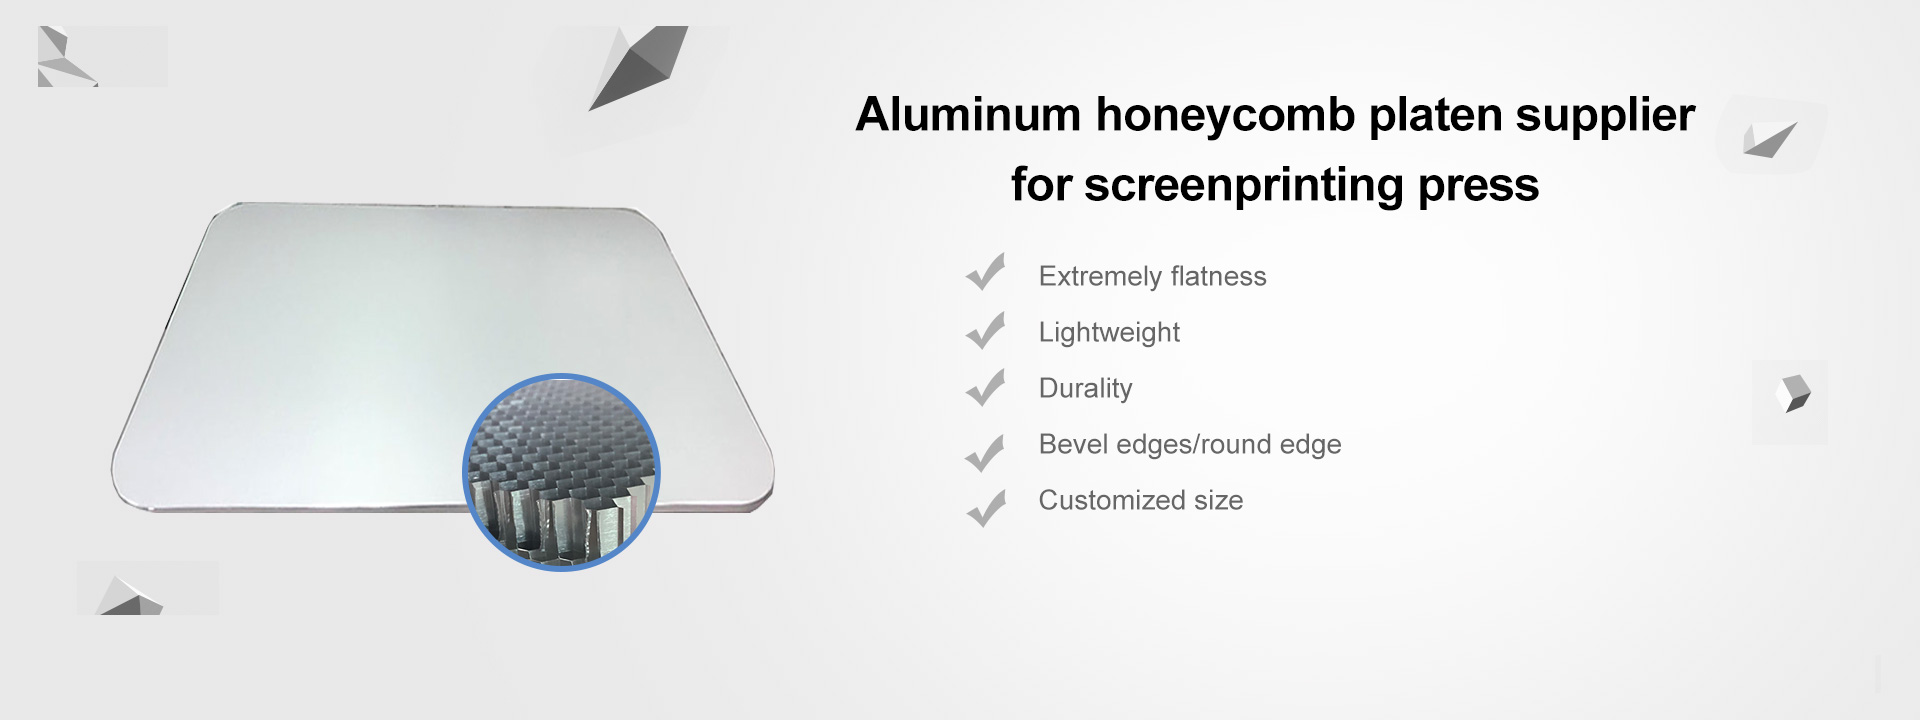 screenprinting aluminum honeycomb platen